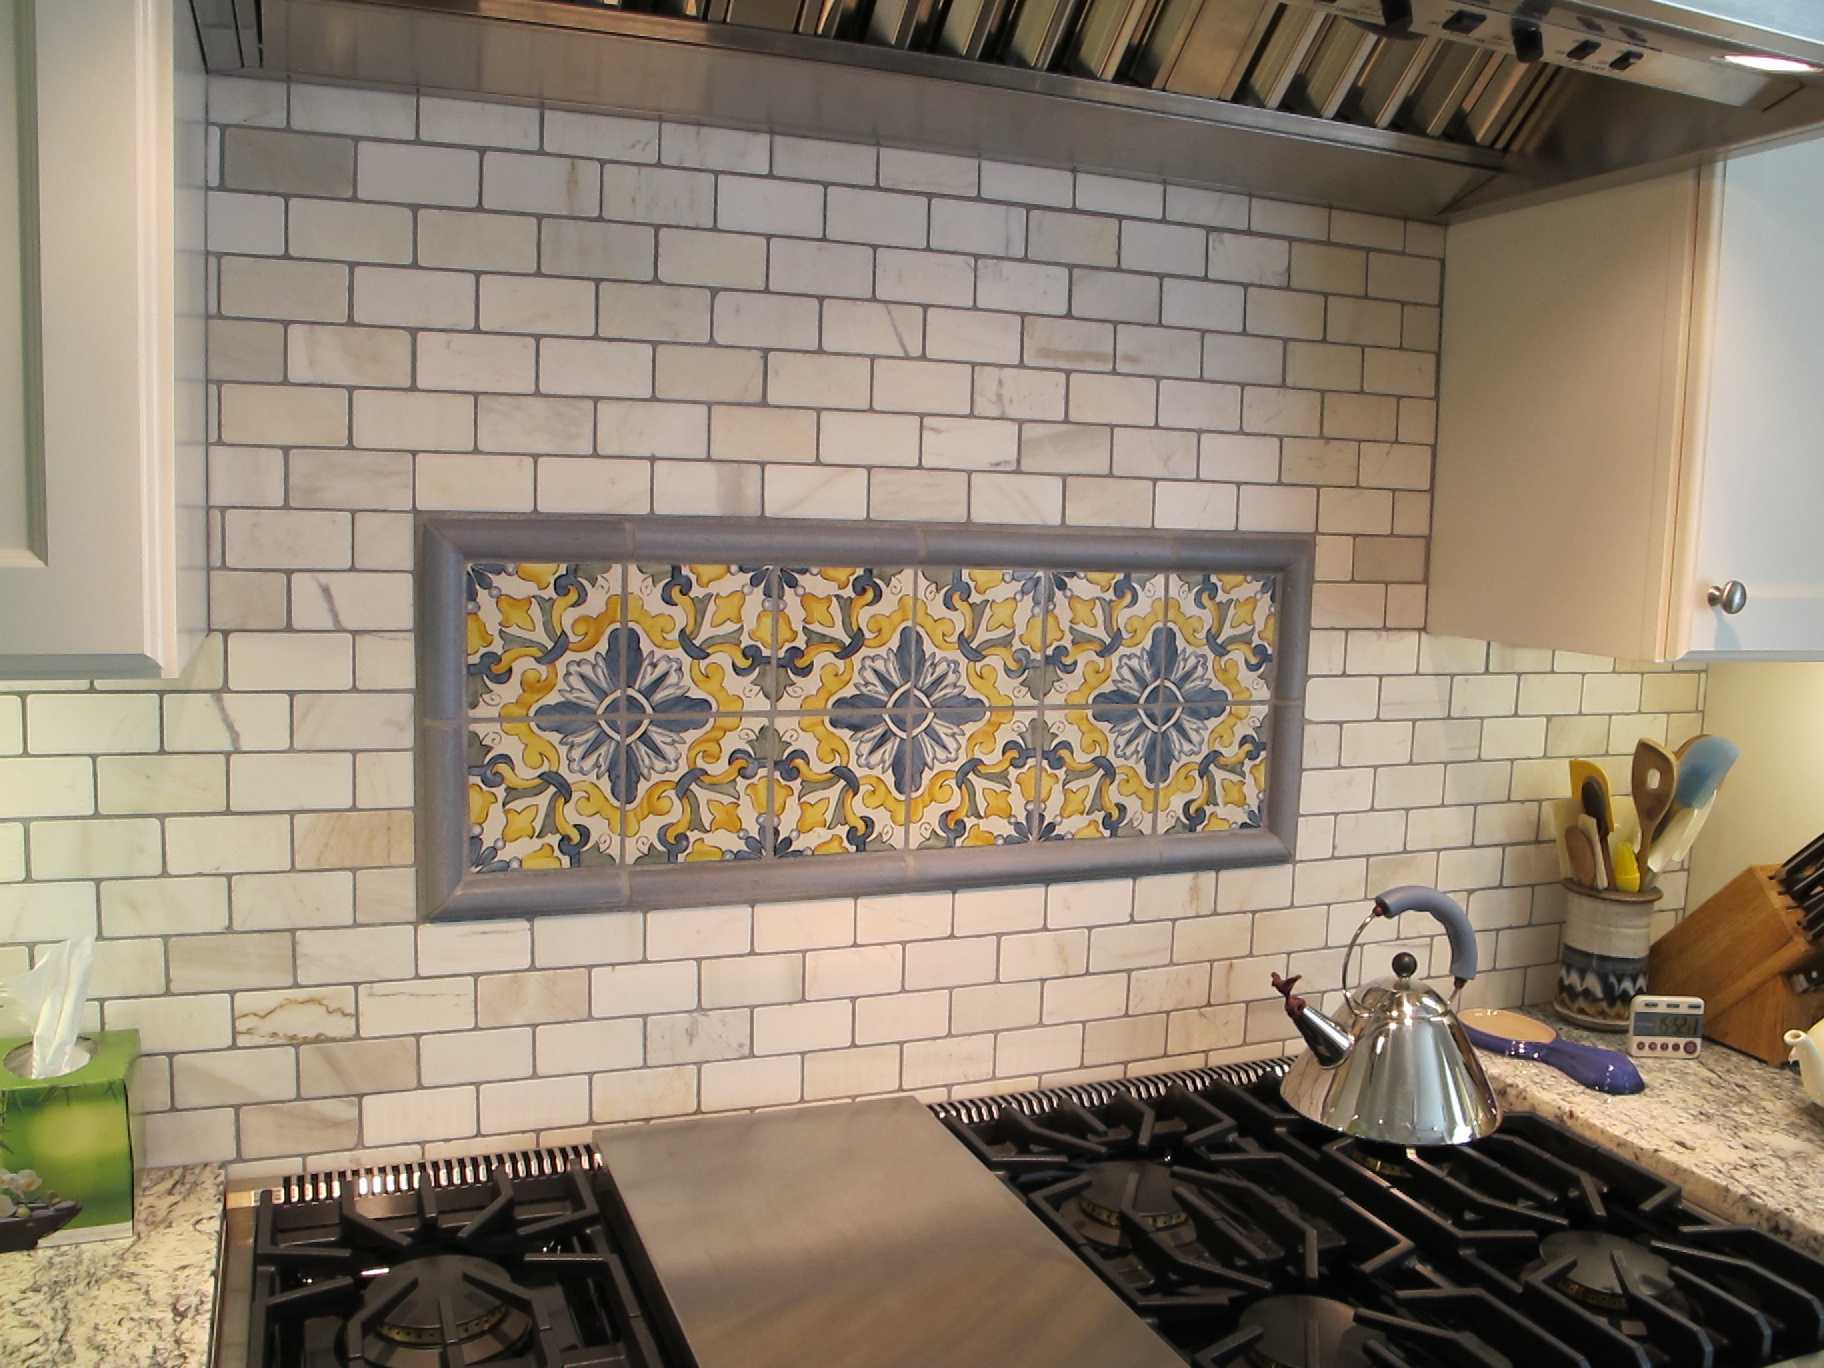 Дизайн кафельной плитки на полу и стенах в кухонном помещении